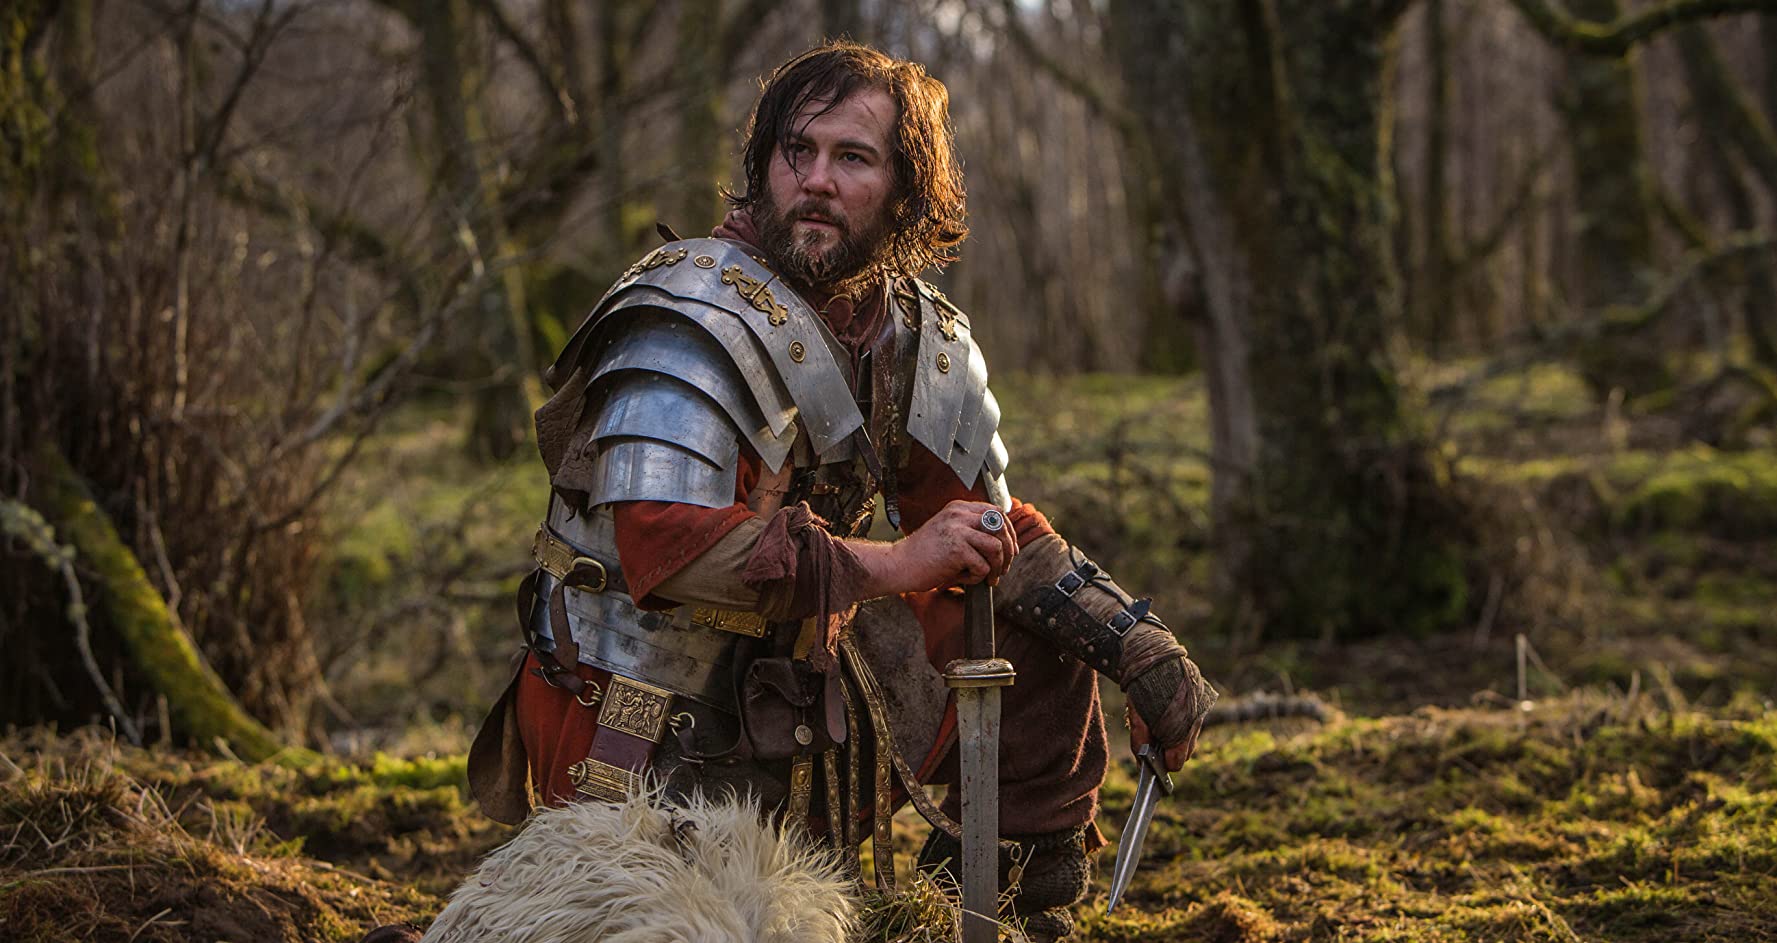 Stuart Brennan as the centurion Grackus in Wolf (2019)